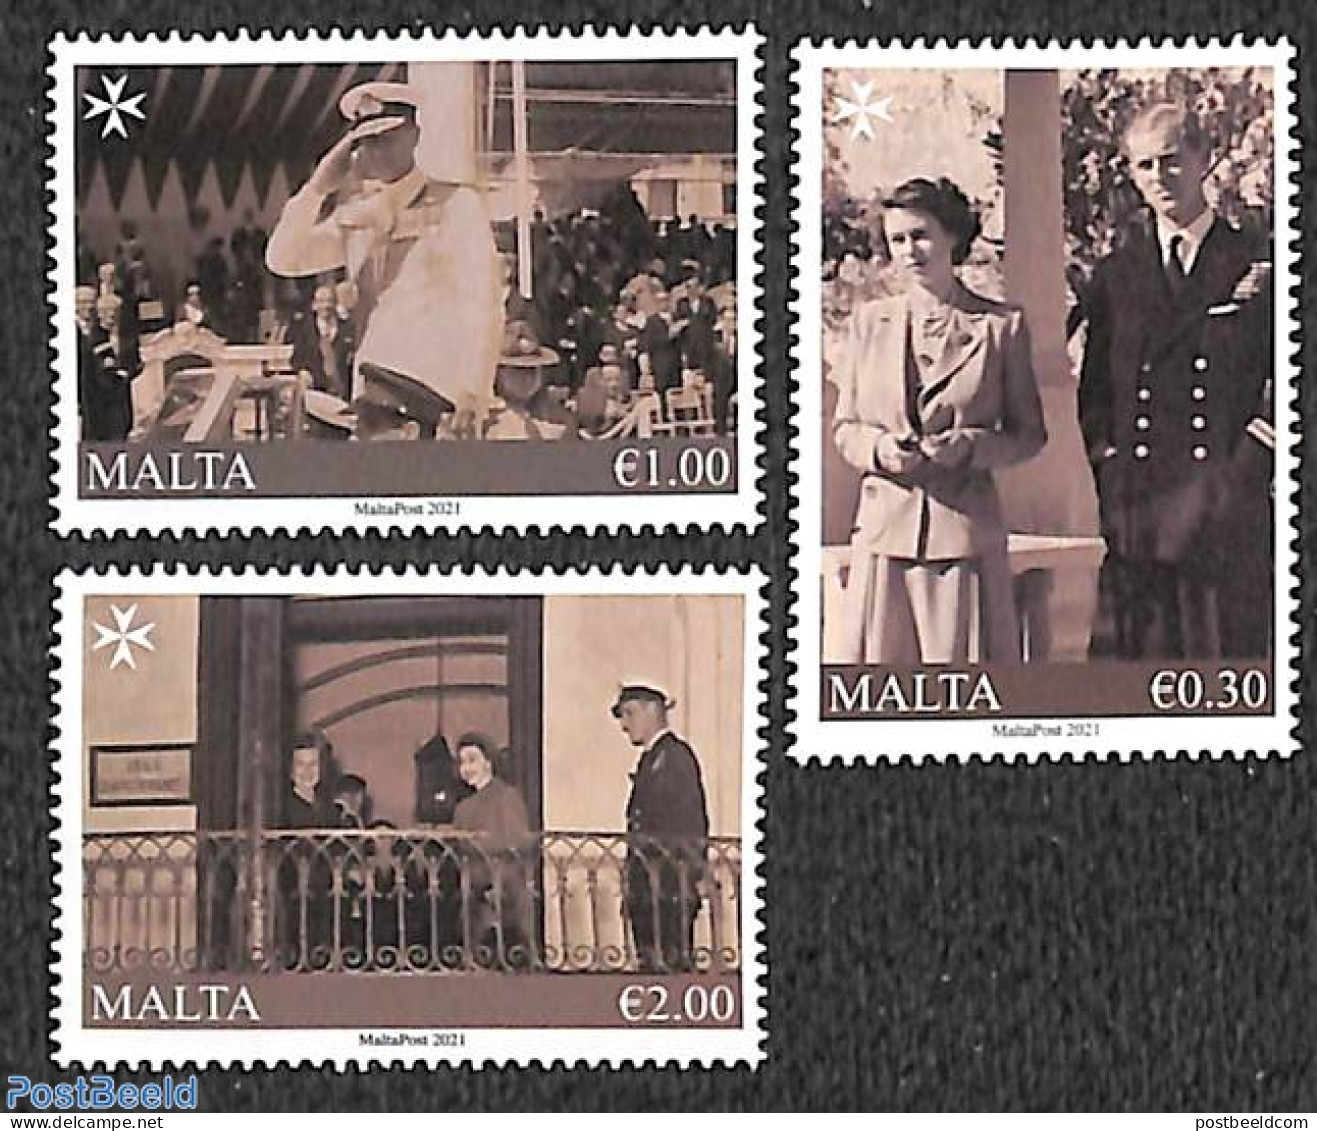 Malta 2021 Prince Philip 100th Birth Anniversary 3v, Mint NH, History - Kings & Queens (Royalty) - Königshäuser, Adel